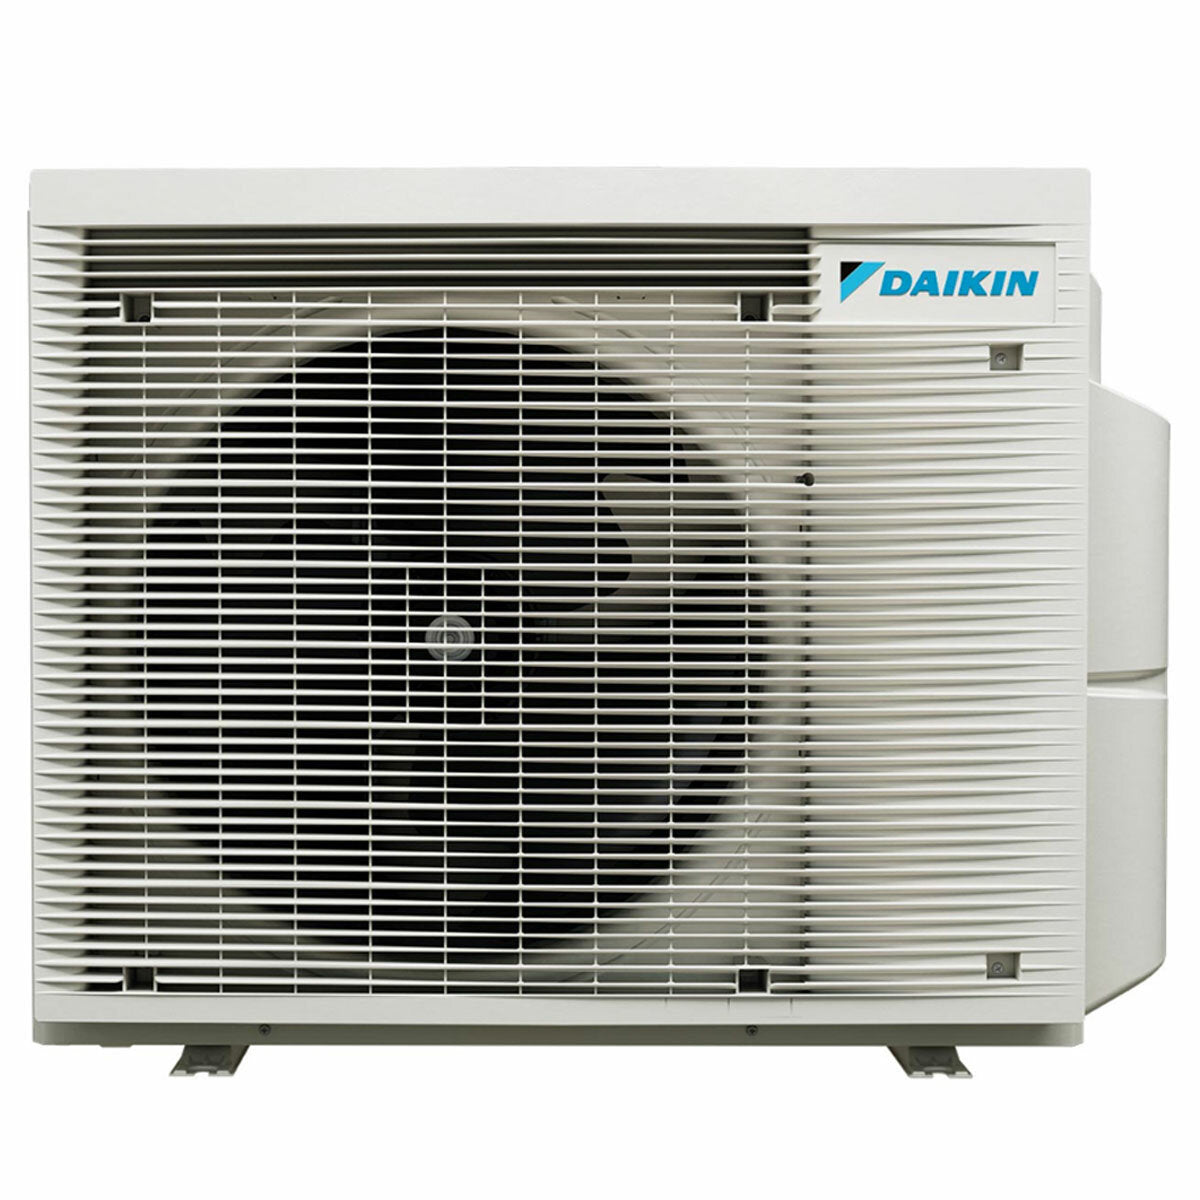 Daikin Perfera Floor climatiseur trial split 9000 + 9000 + 12000 BTU inverter A+++ wifi unité extérieure 5,2 kW